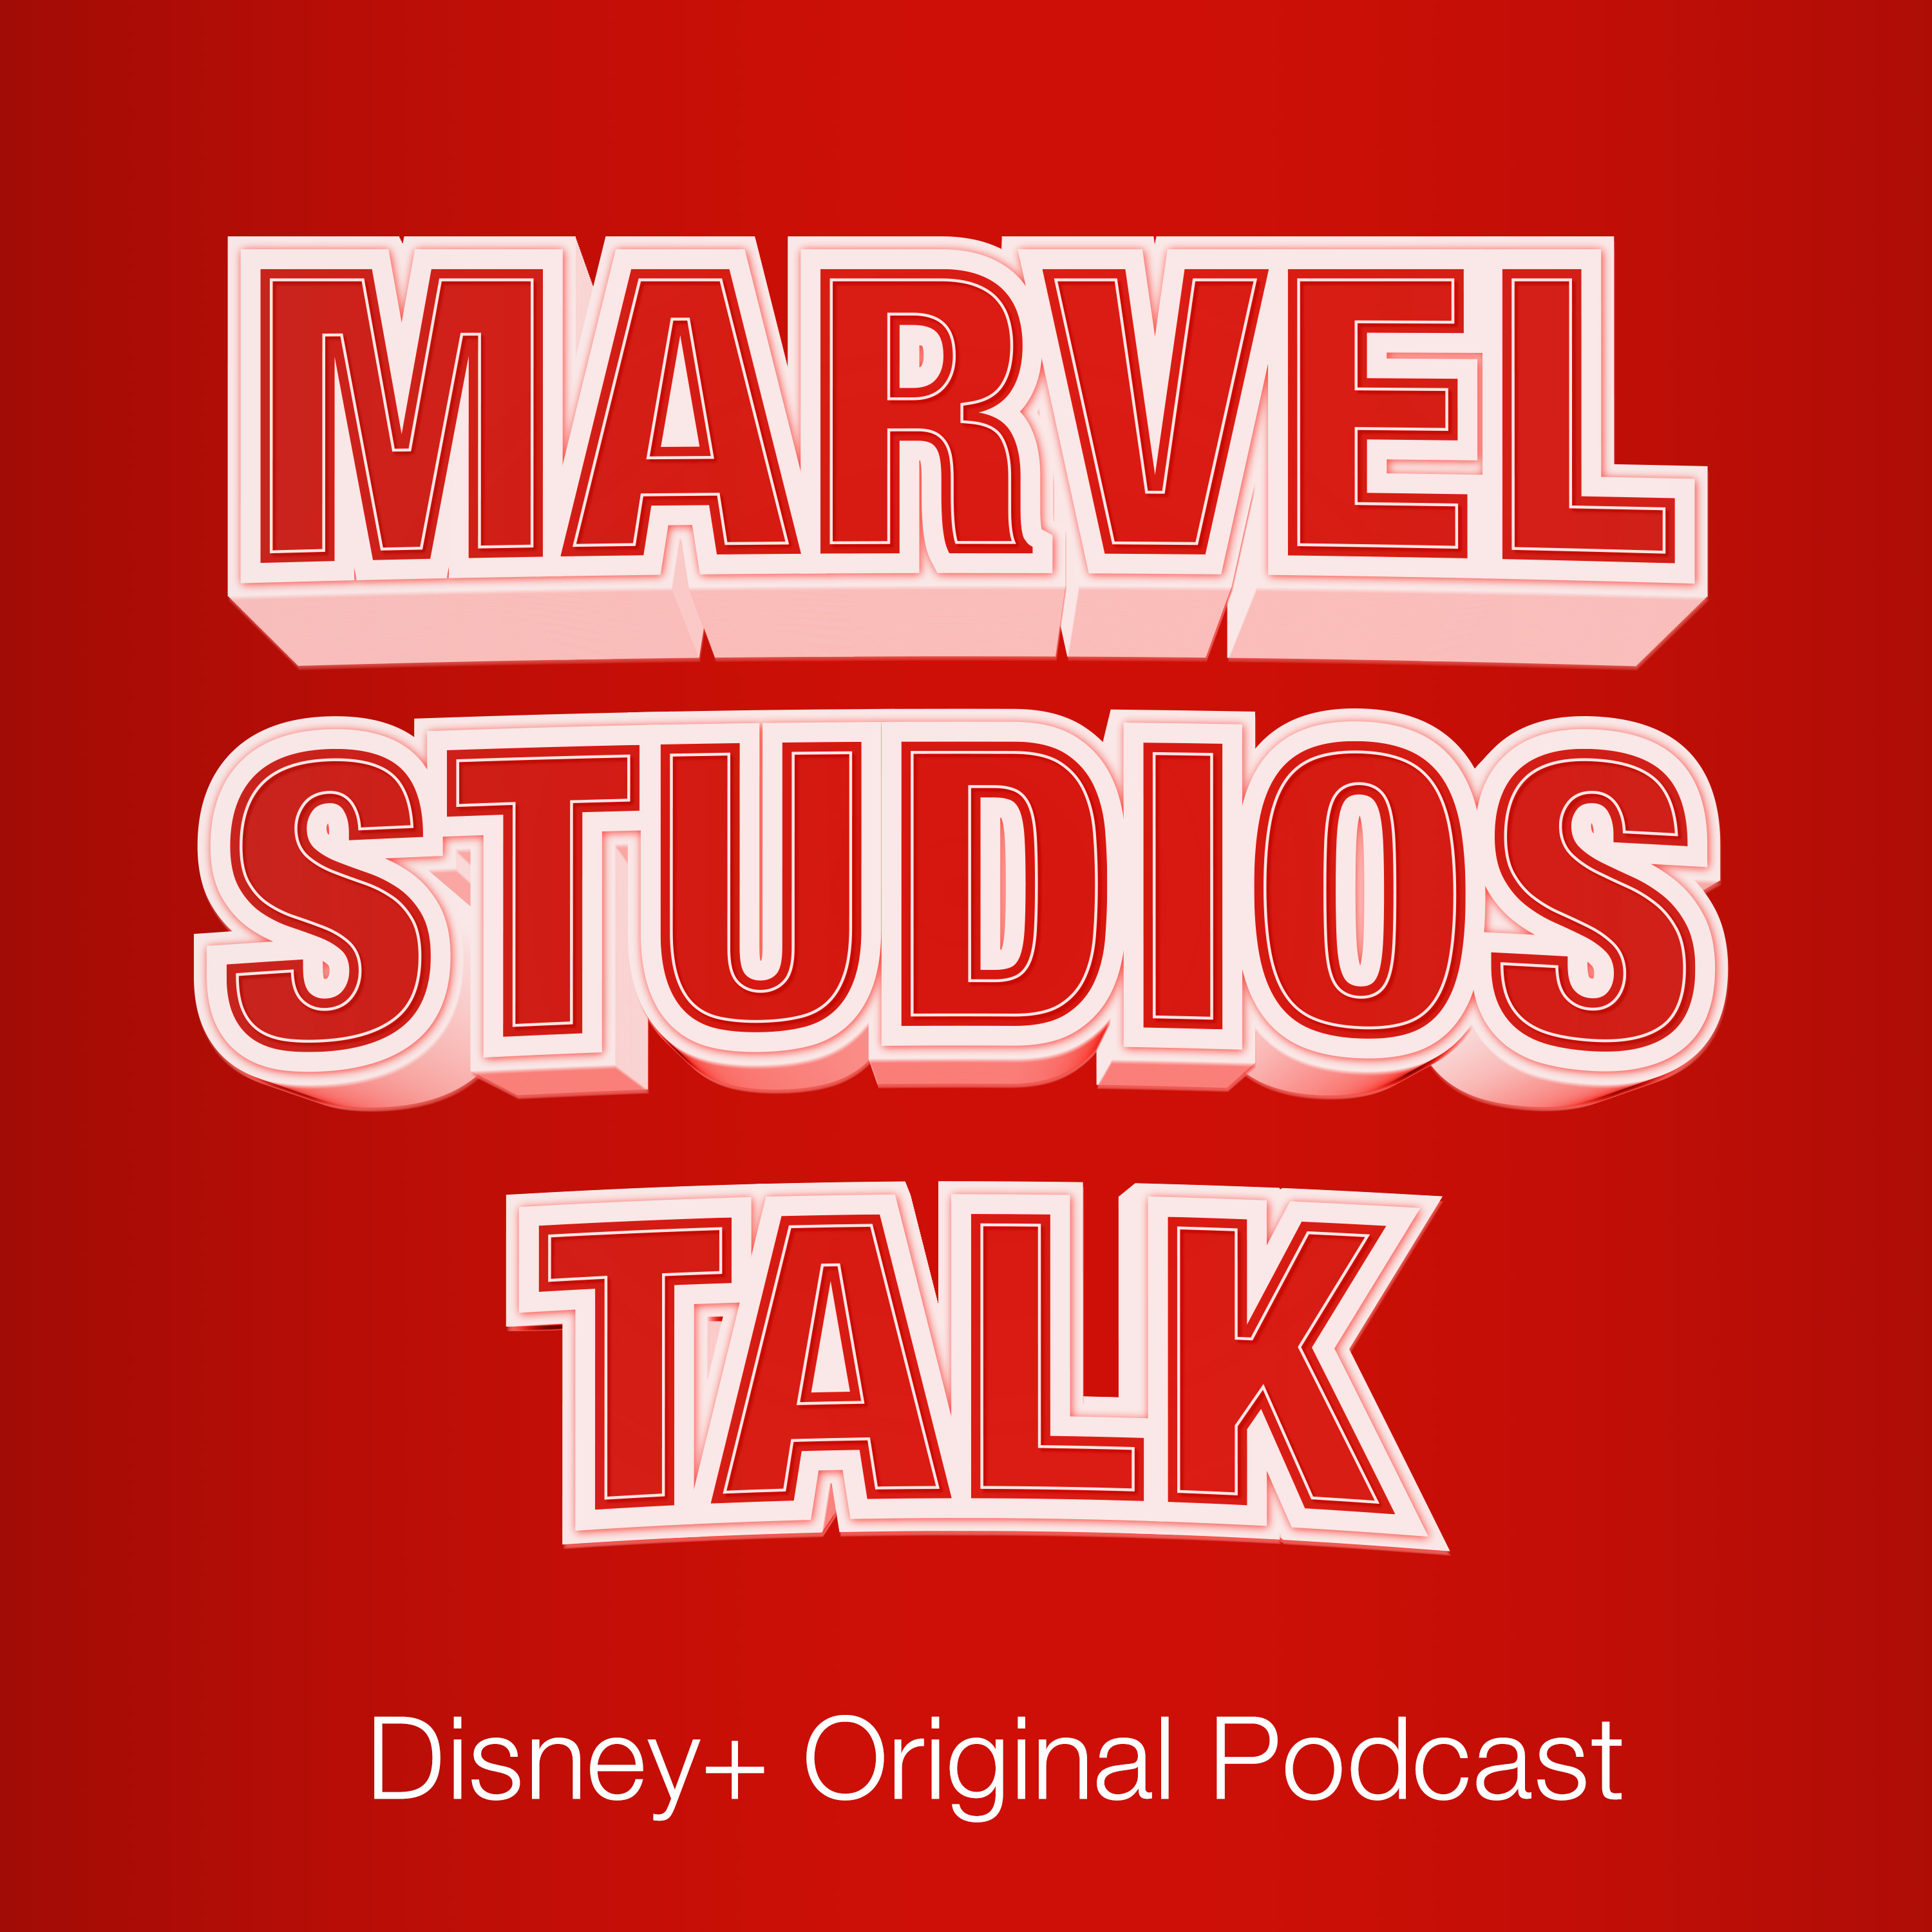 聴けばディズニープラスのマーベル作品が もっと楽しくなる もっと好きになる ディズニープラス オリジナルポッドキャスト Marvel Studios Talk が配信開始 Jfncのプレスリリース